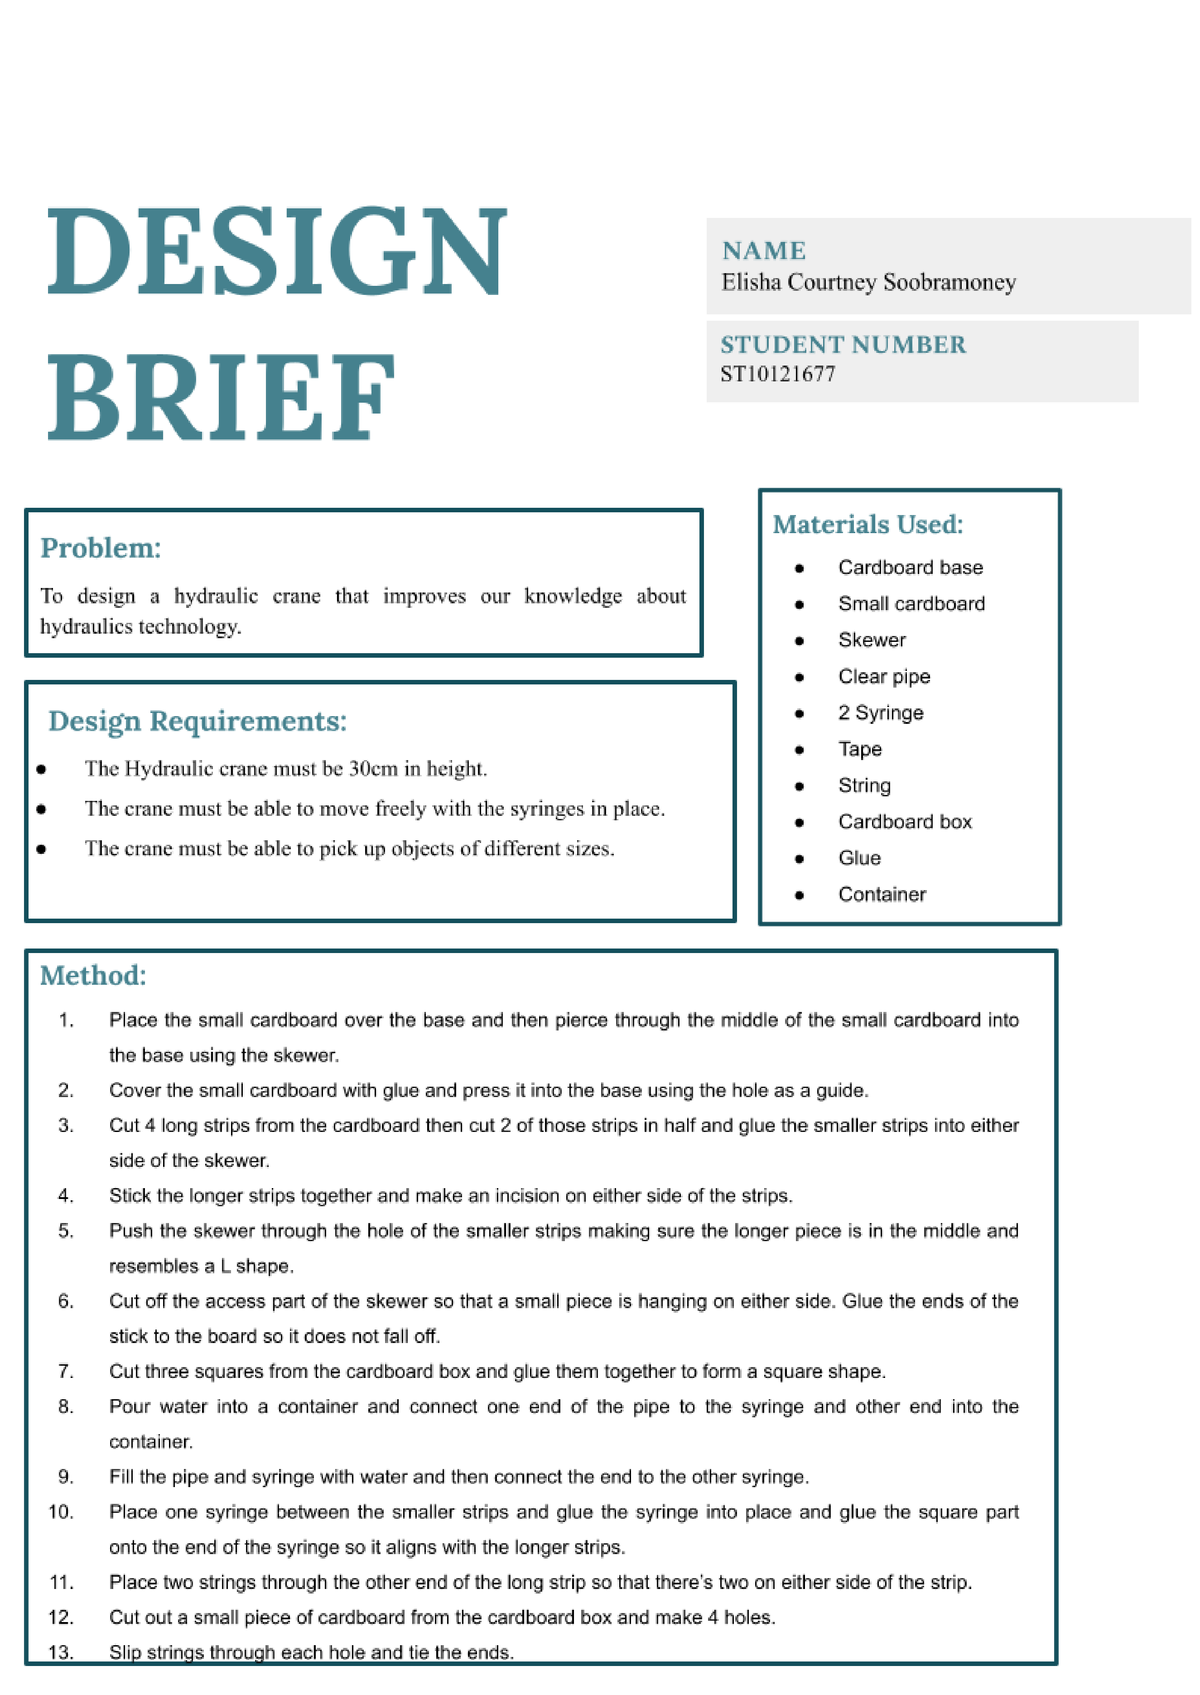 how to write a design brief grade 7 crane